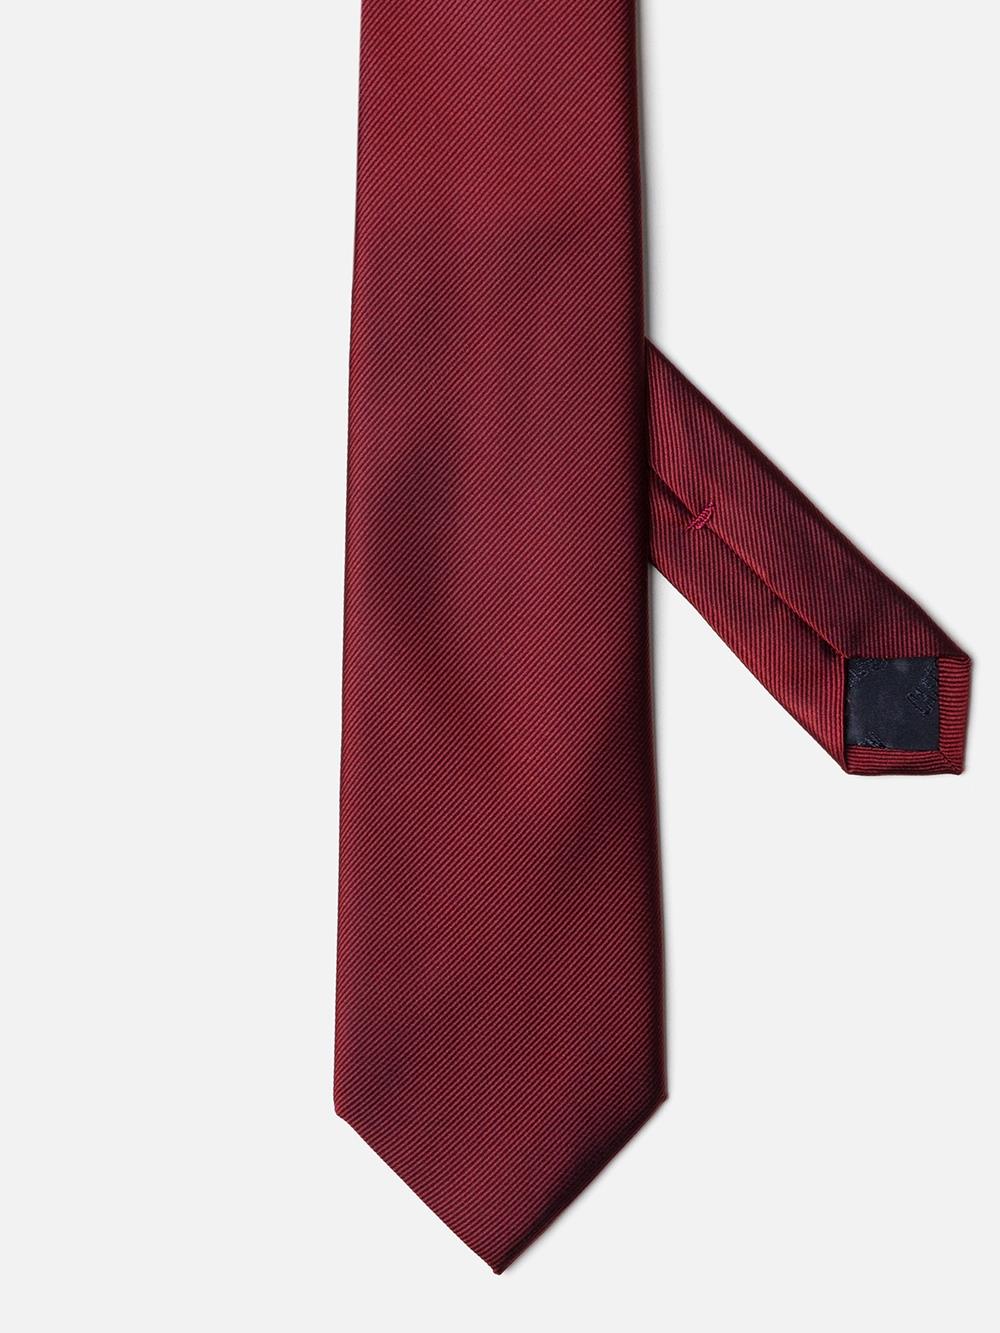 Corbata en sarga de seda roja